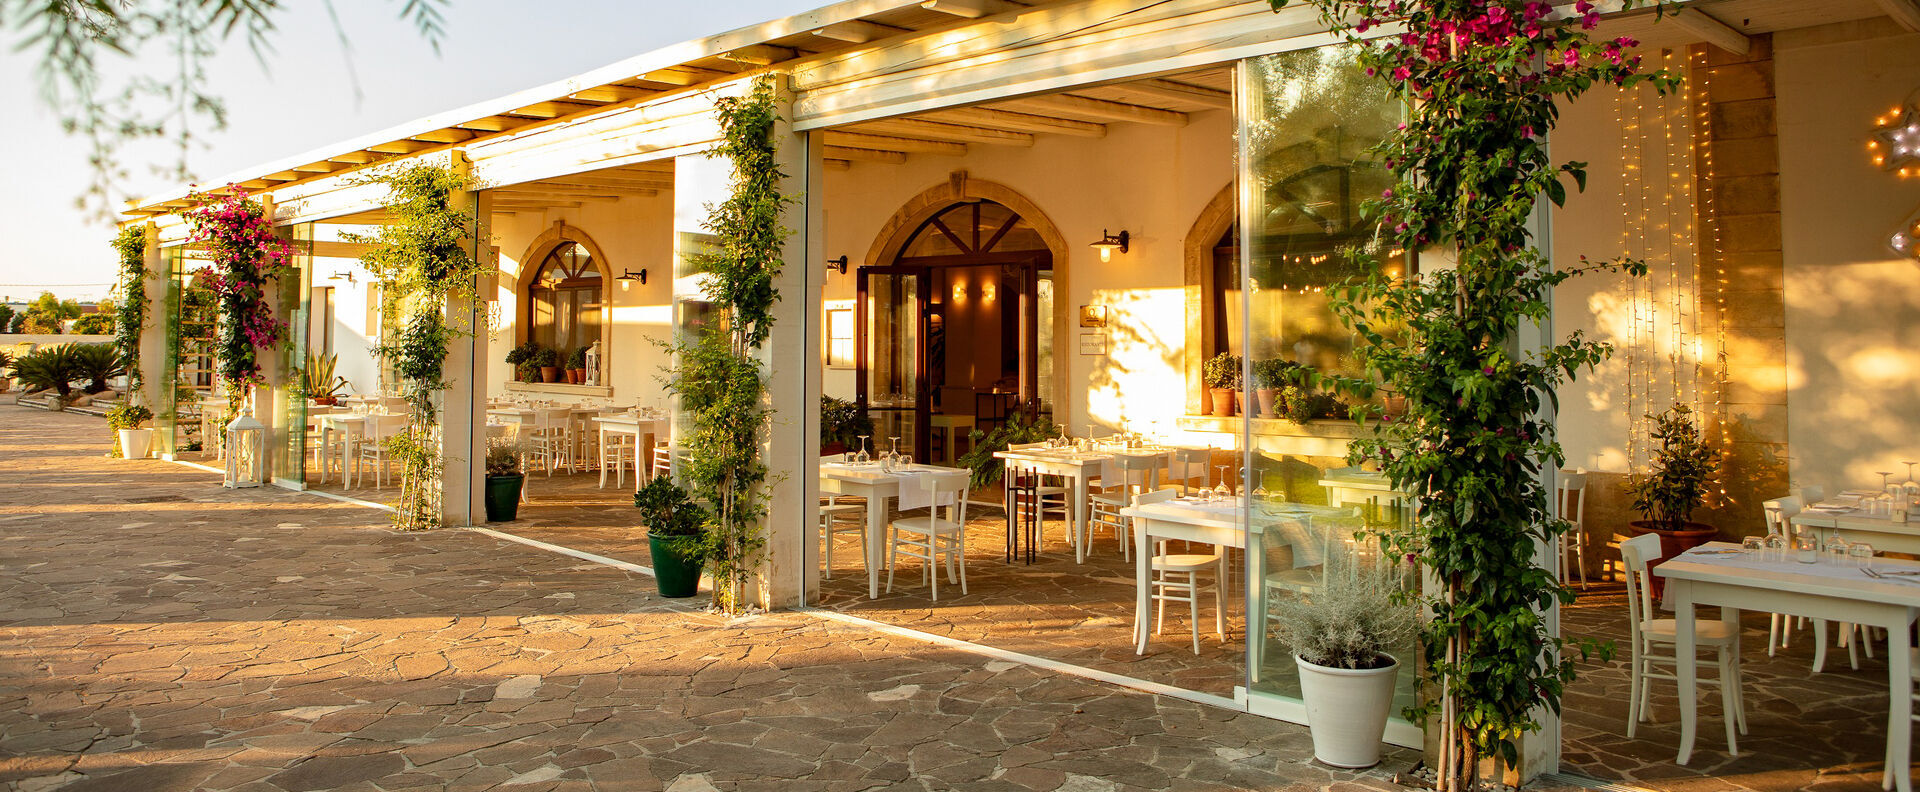 Borgo Mulino a Vento - Resort ★★★★ - Toute l’élégance d’une demeure familiale dans la nature magnifique du Salento. - Les Pouilles, Italie